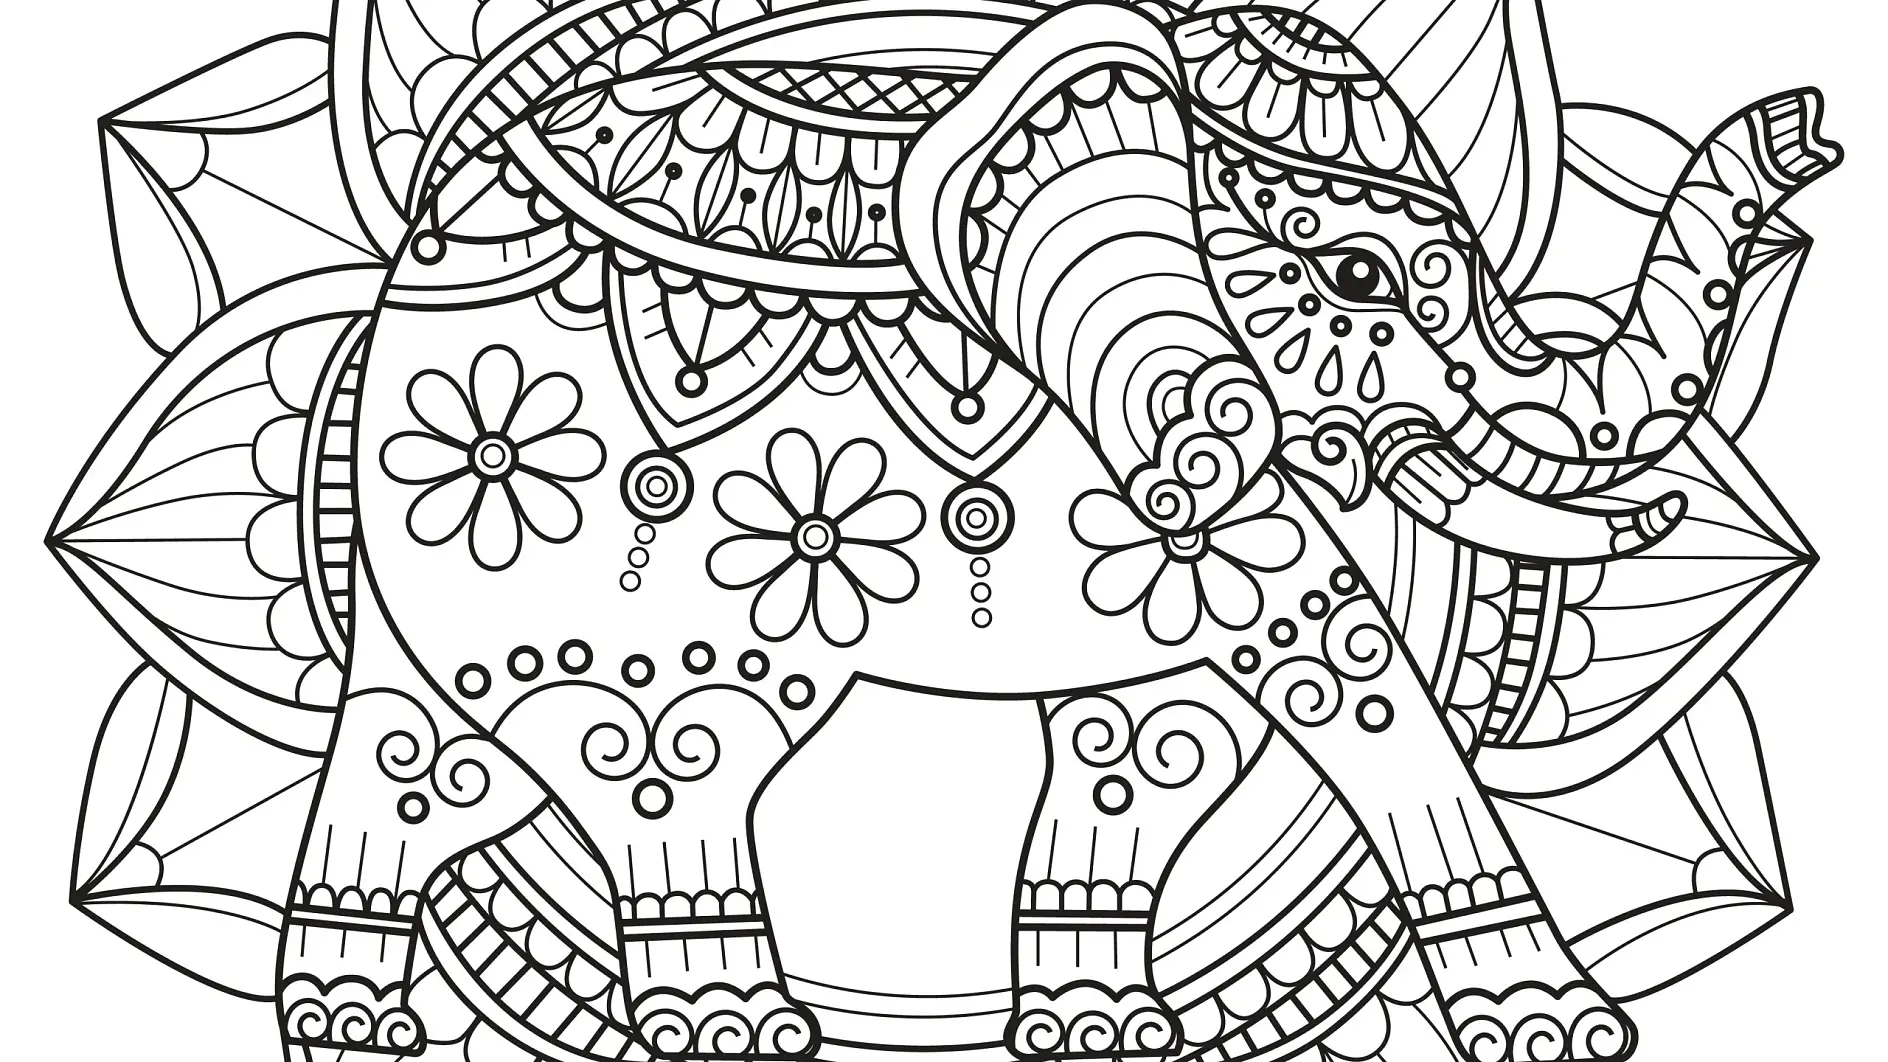 Ausmalbild Mandala mit Elefant und floralen Mustern